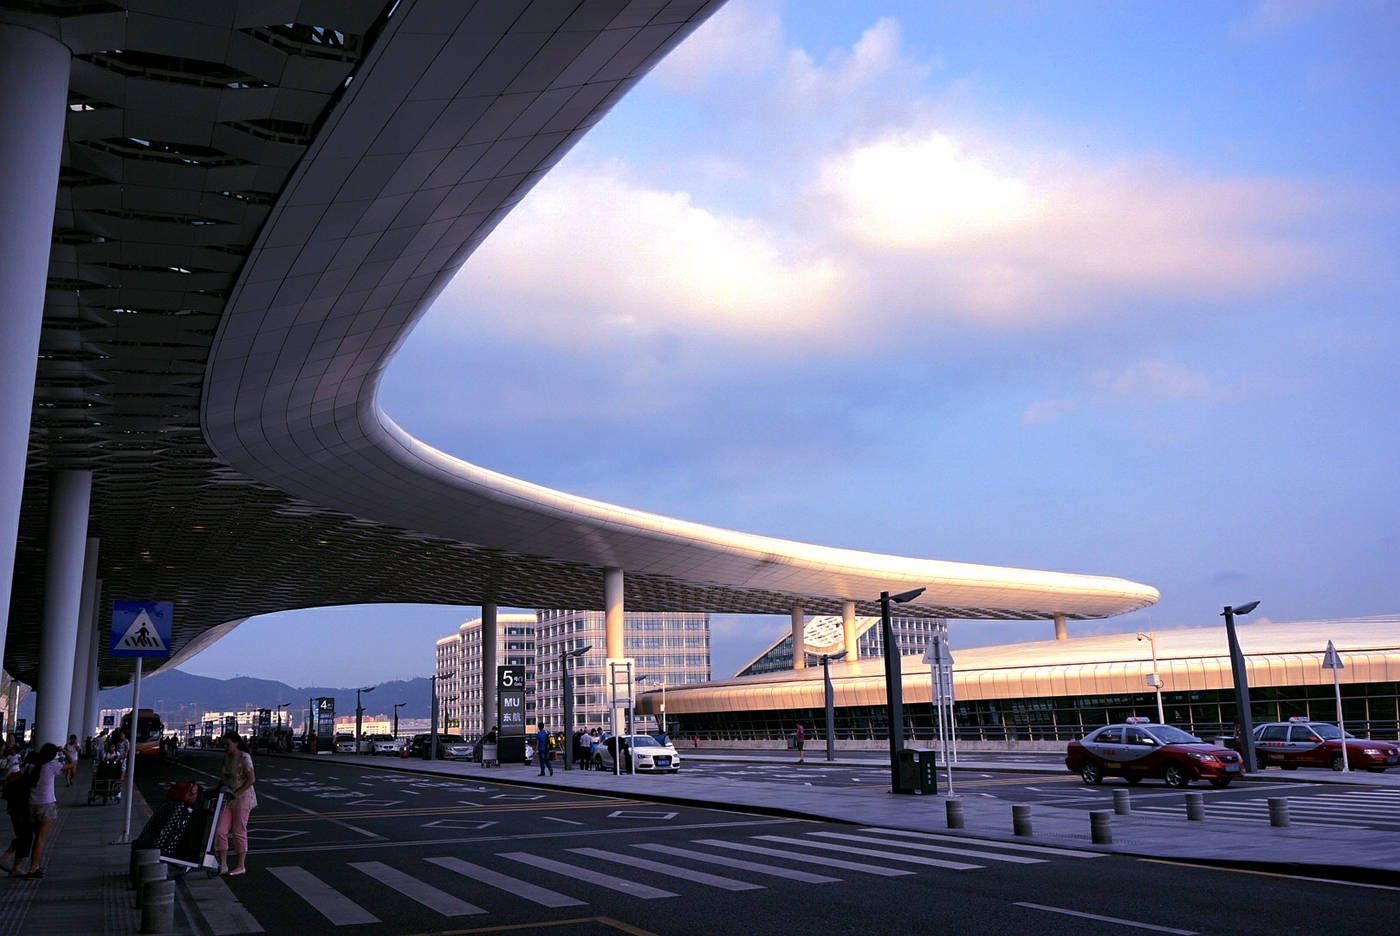 深圳机场再扩建,耗资123亿,可供世界最大客机起降跑道